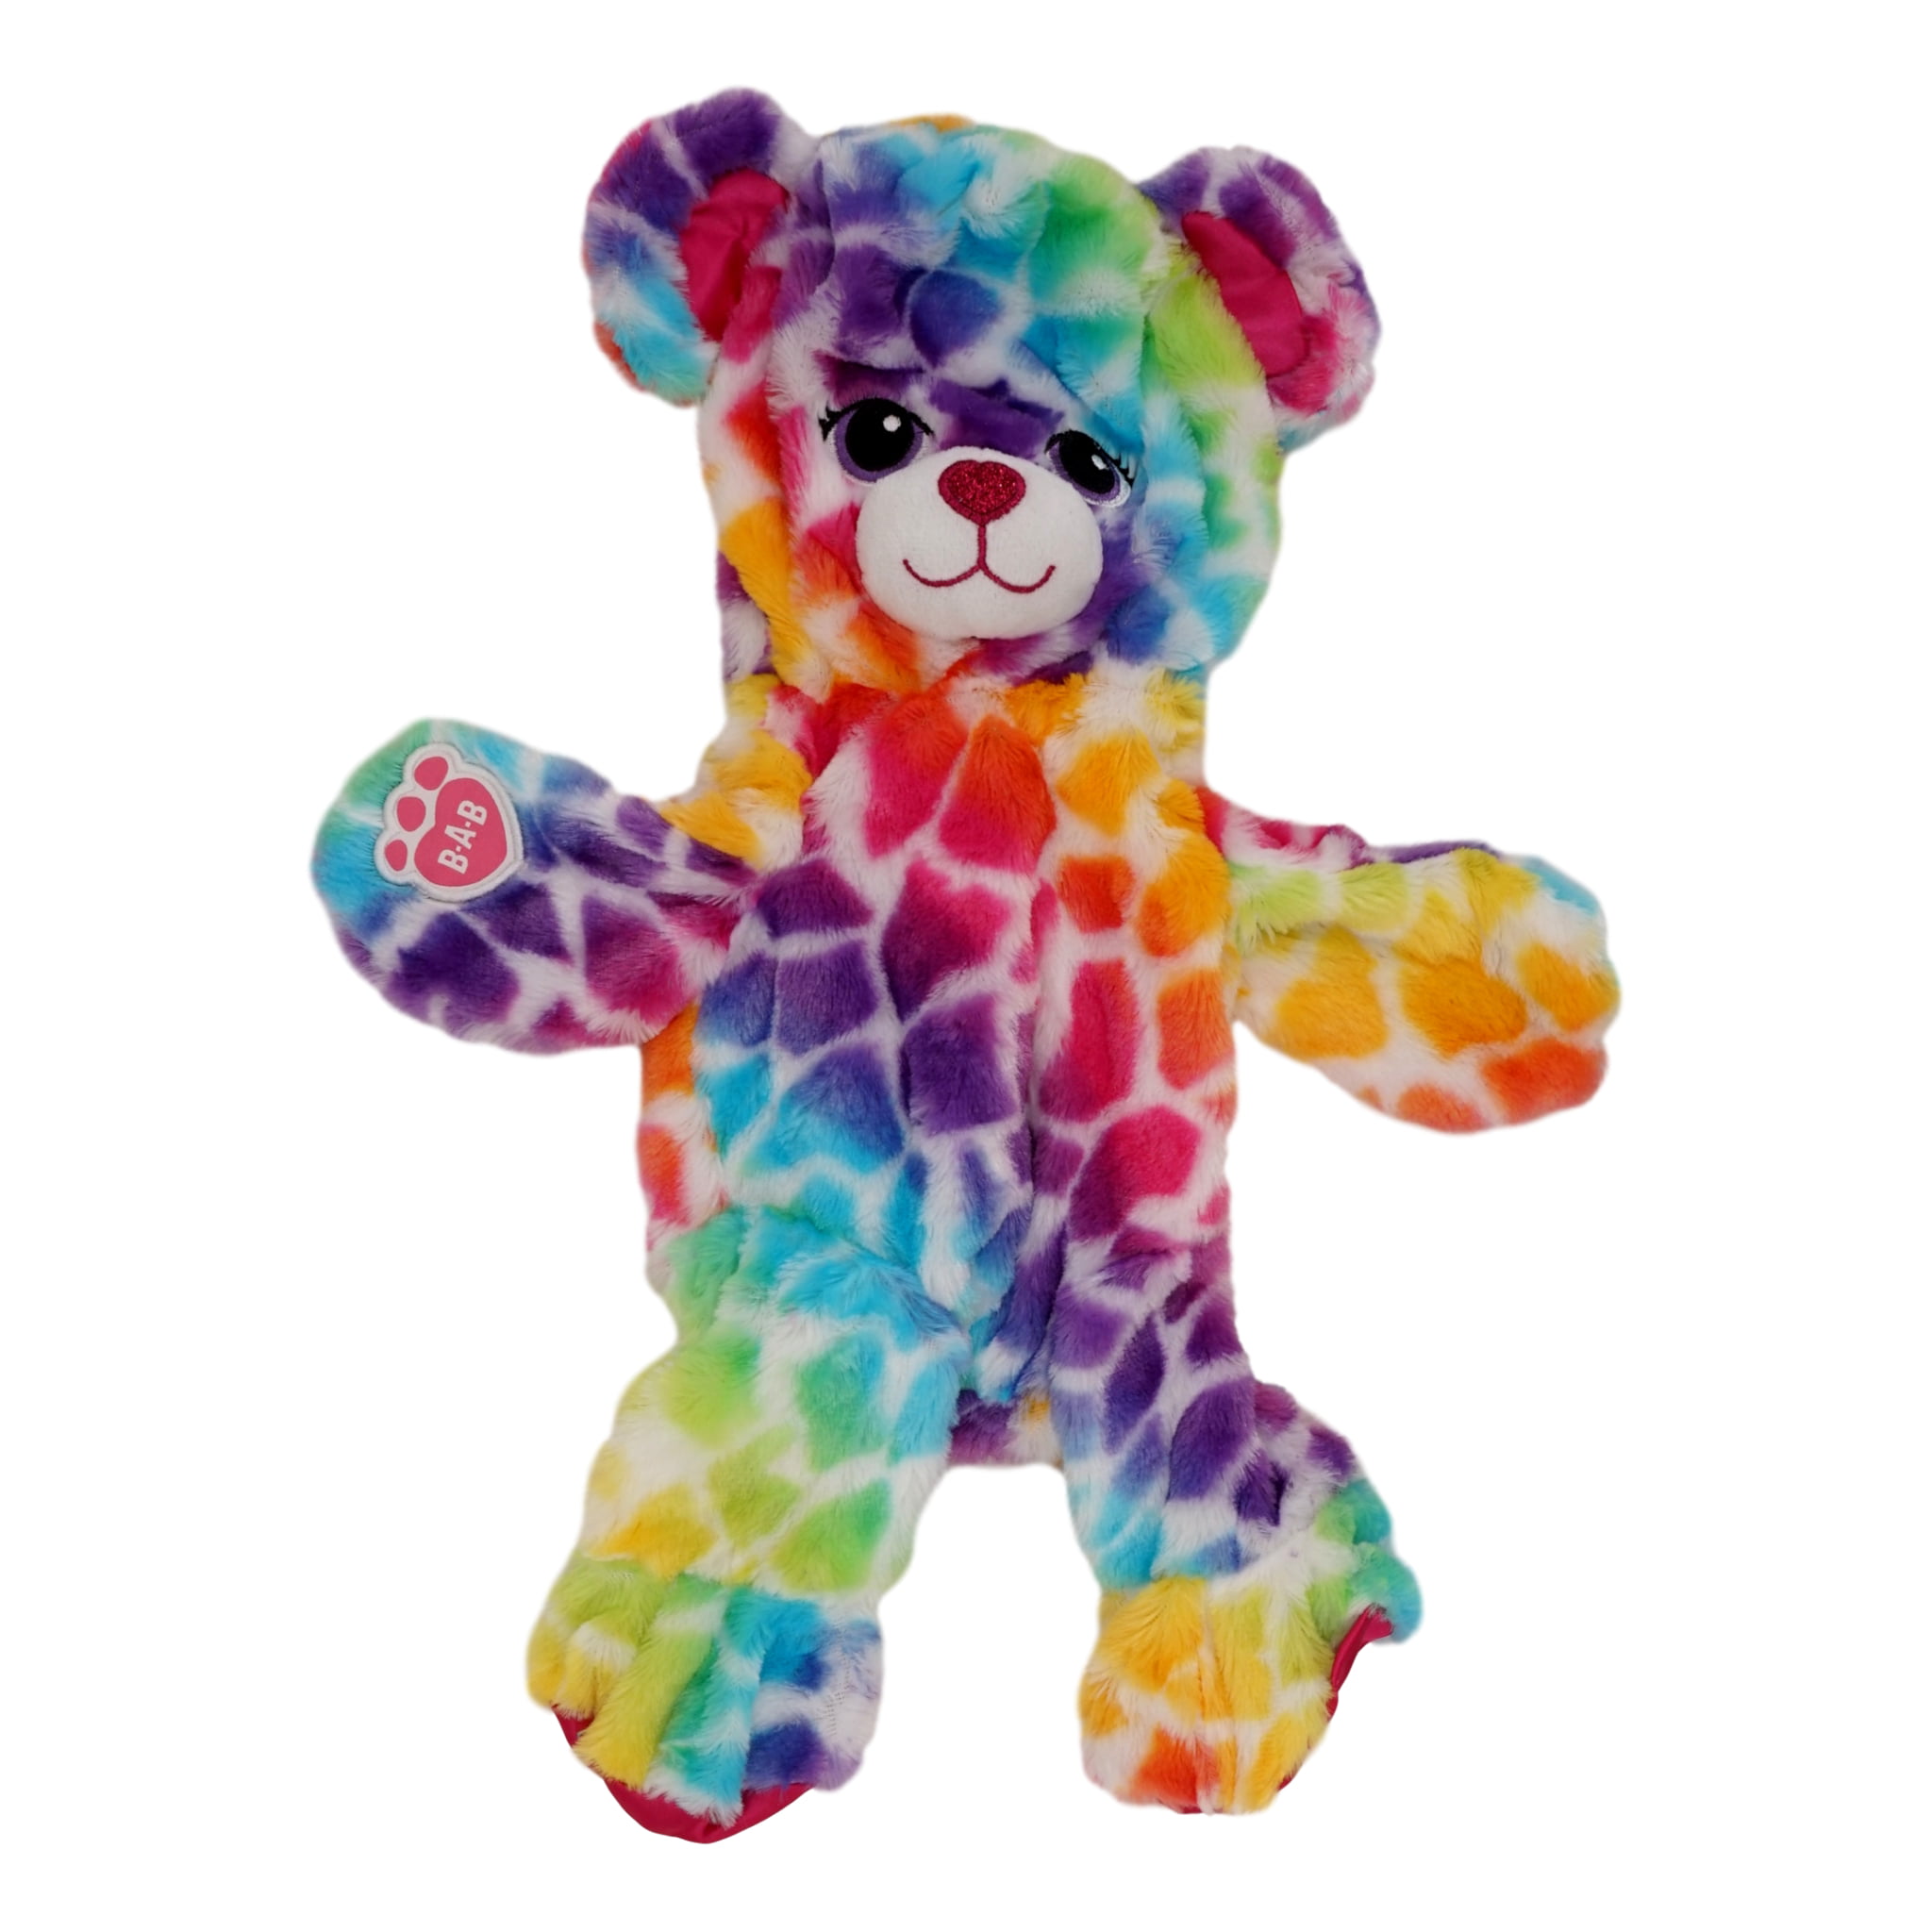 Unstuffed Build-a-Bear Rainbow Safari Bear - Colorful Teddy Bear Plush Toy,...